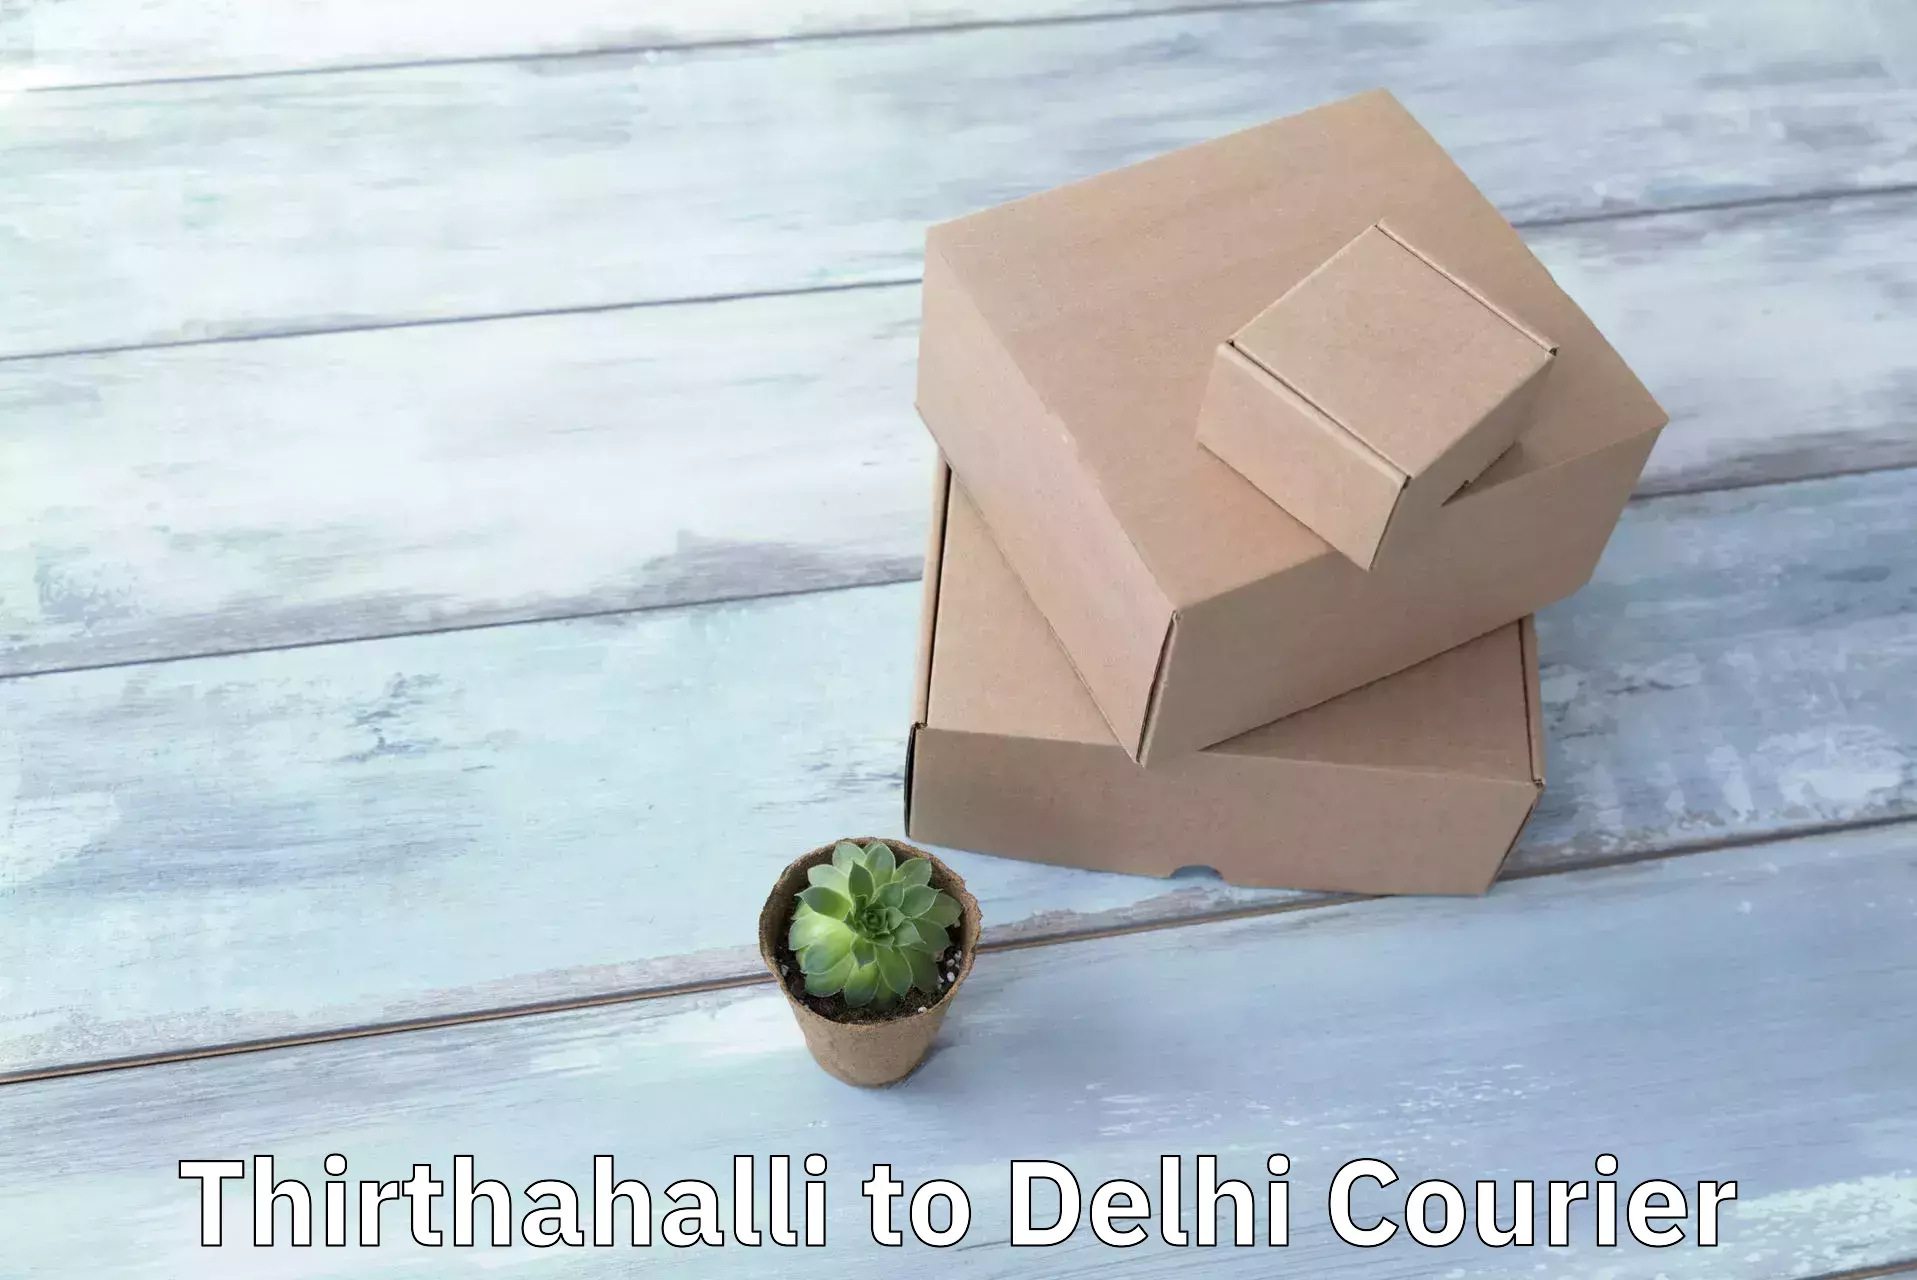 Reliable courier service Thirthahalli to Kalkaji